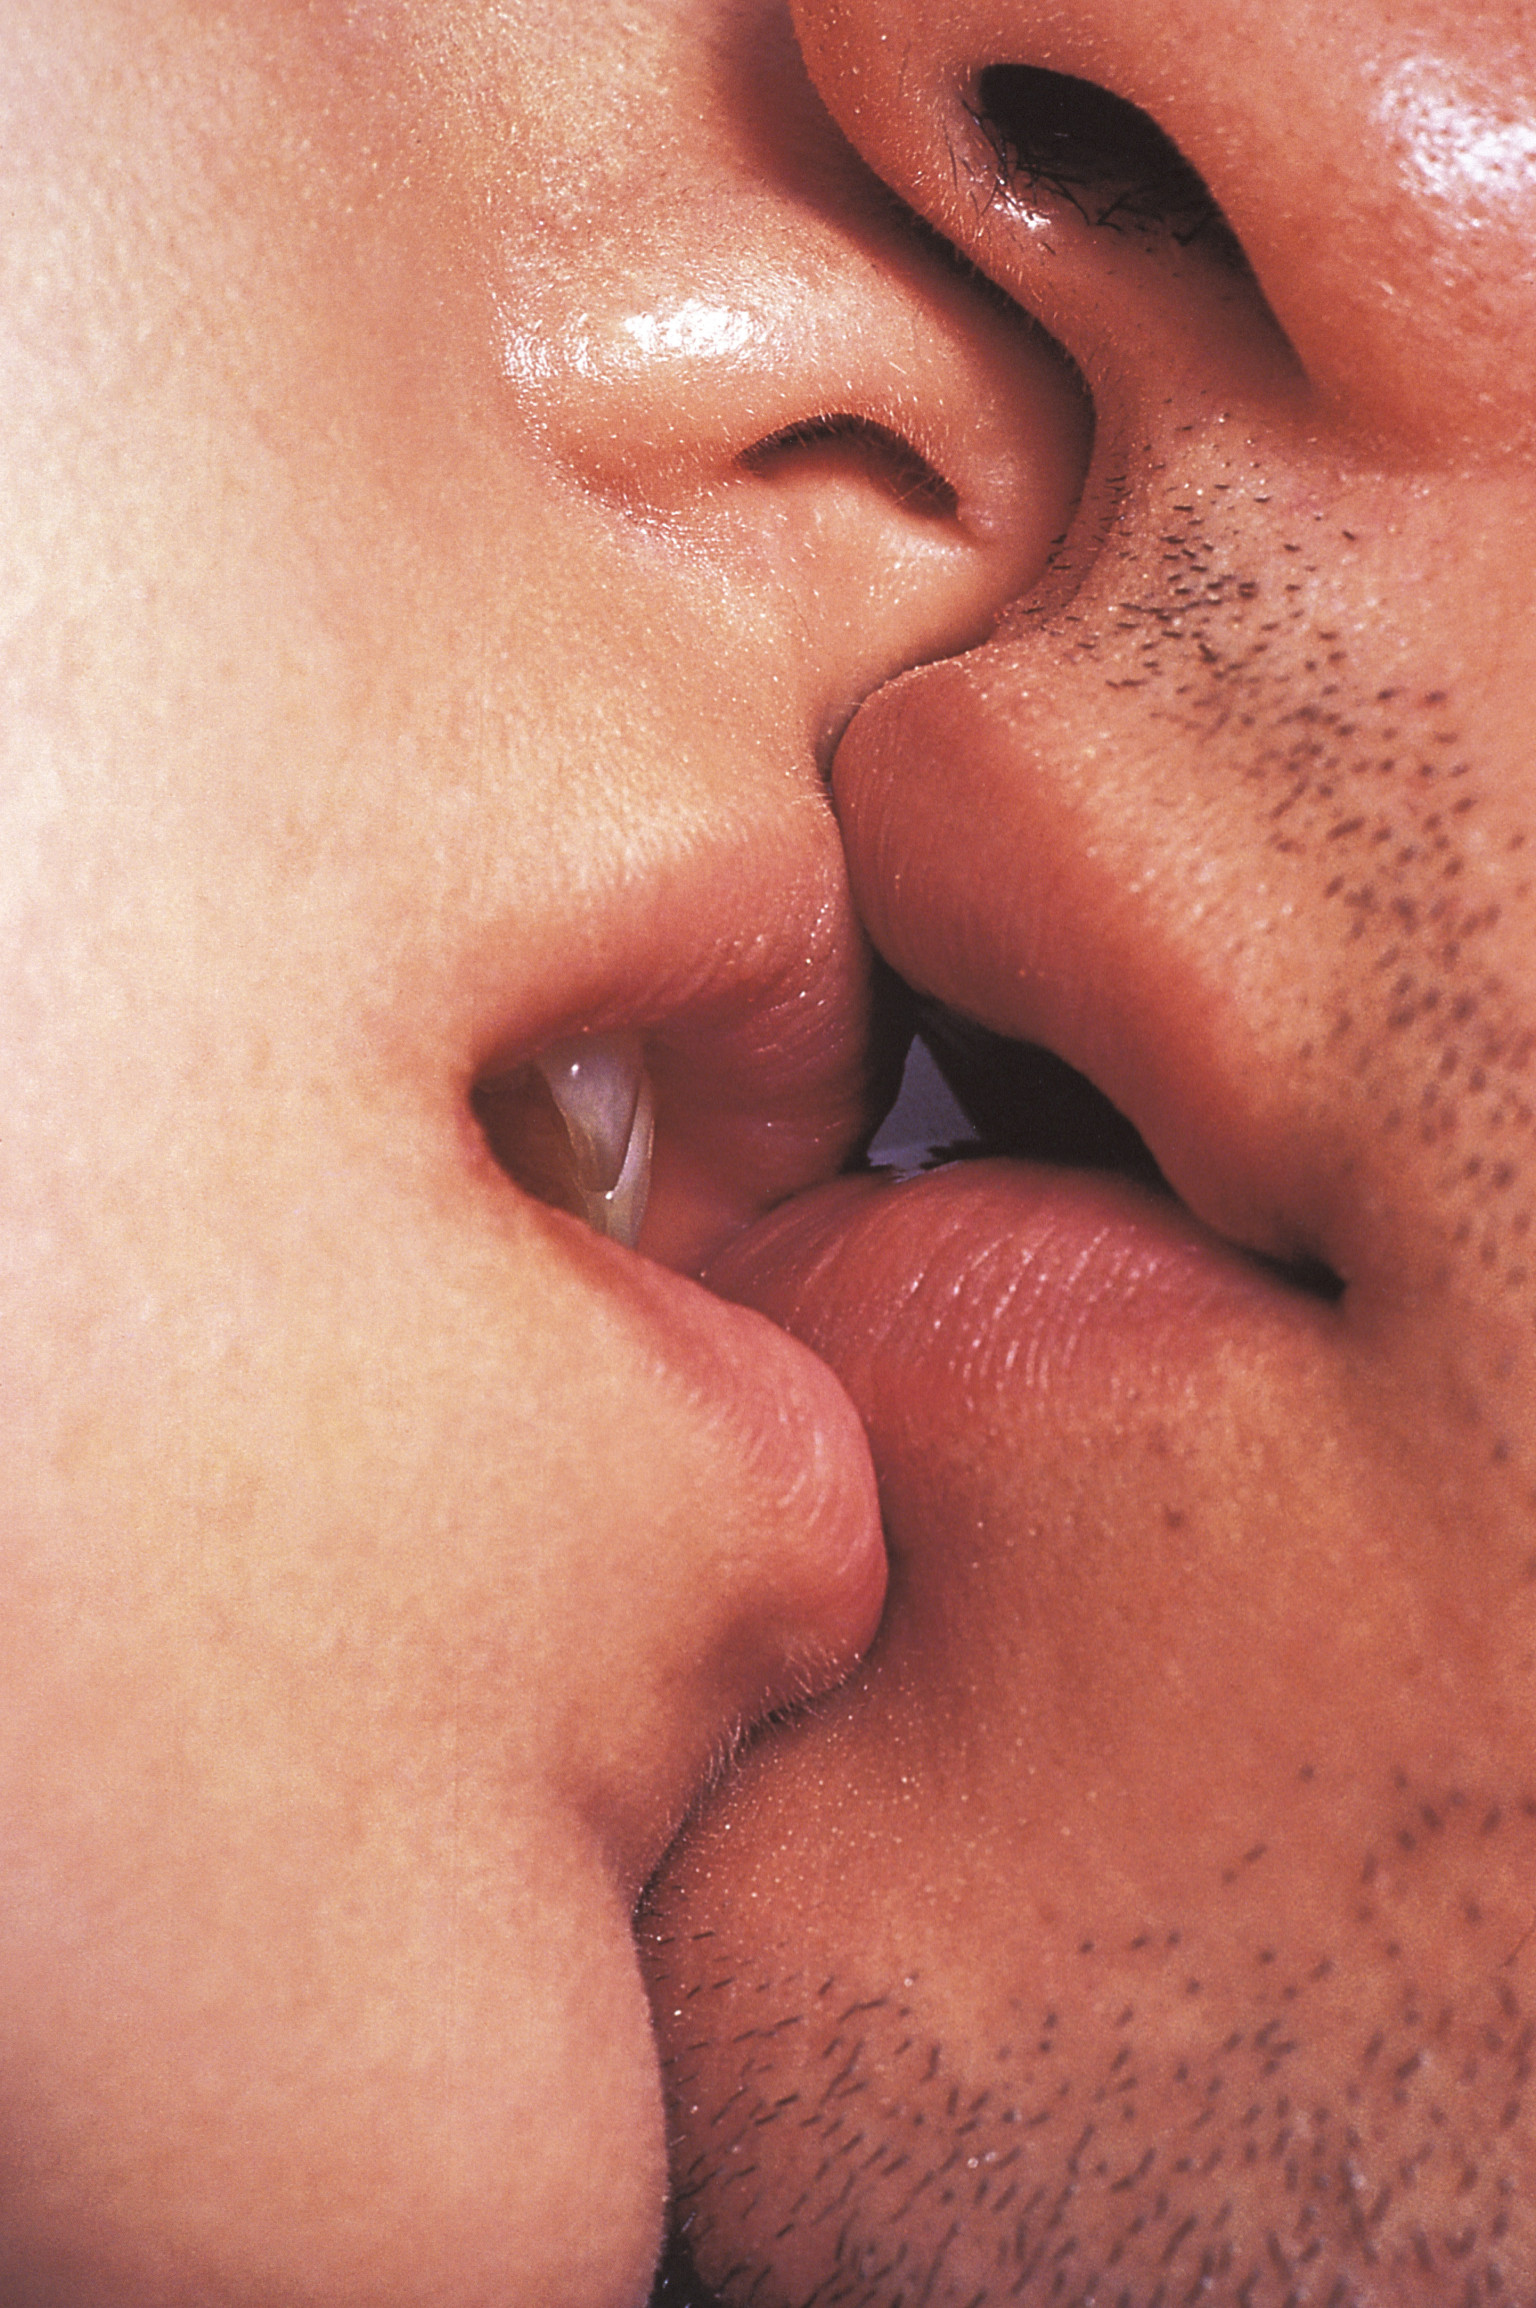 Ай я гуляла в губы целовала. Поцелуй. Красивый поцелуй. Целуются в губы. Целующие губы.